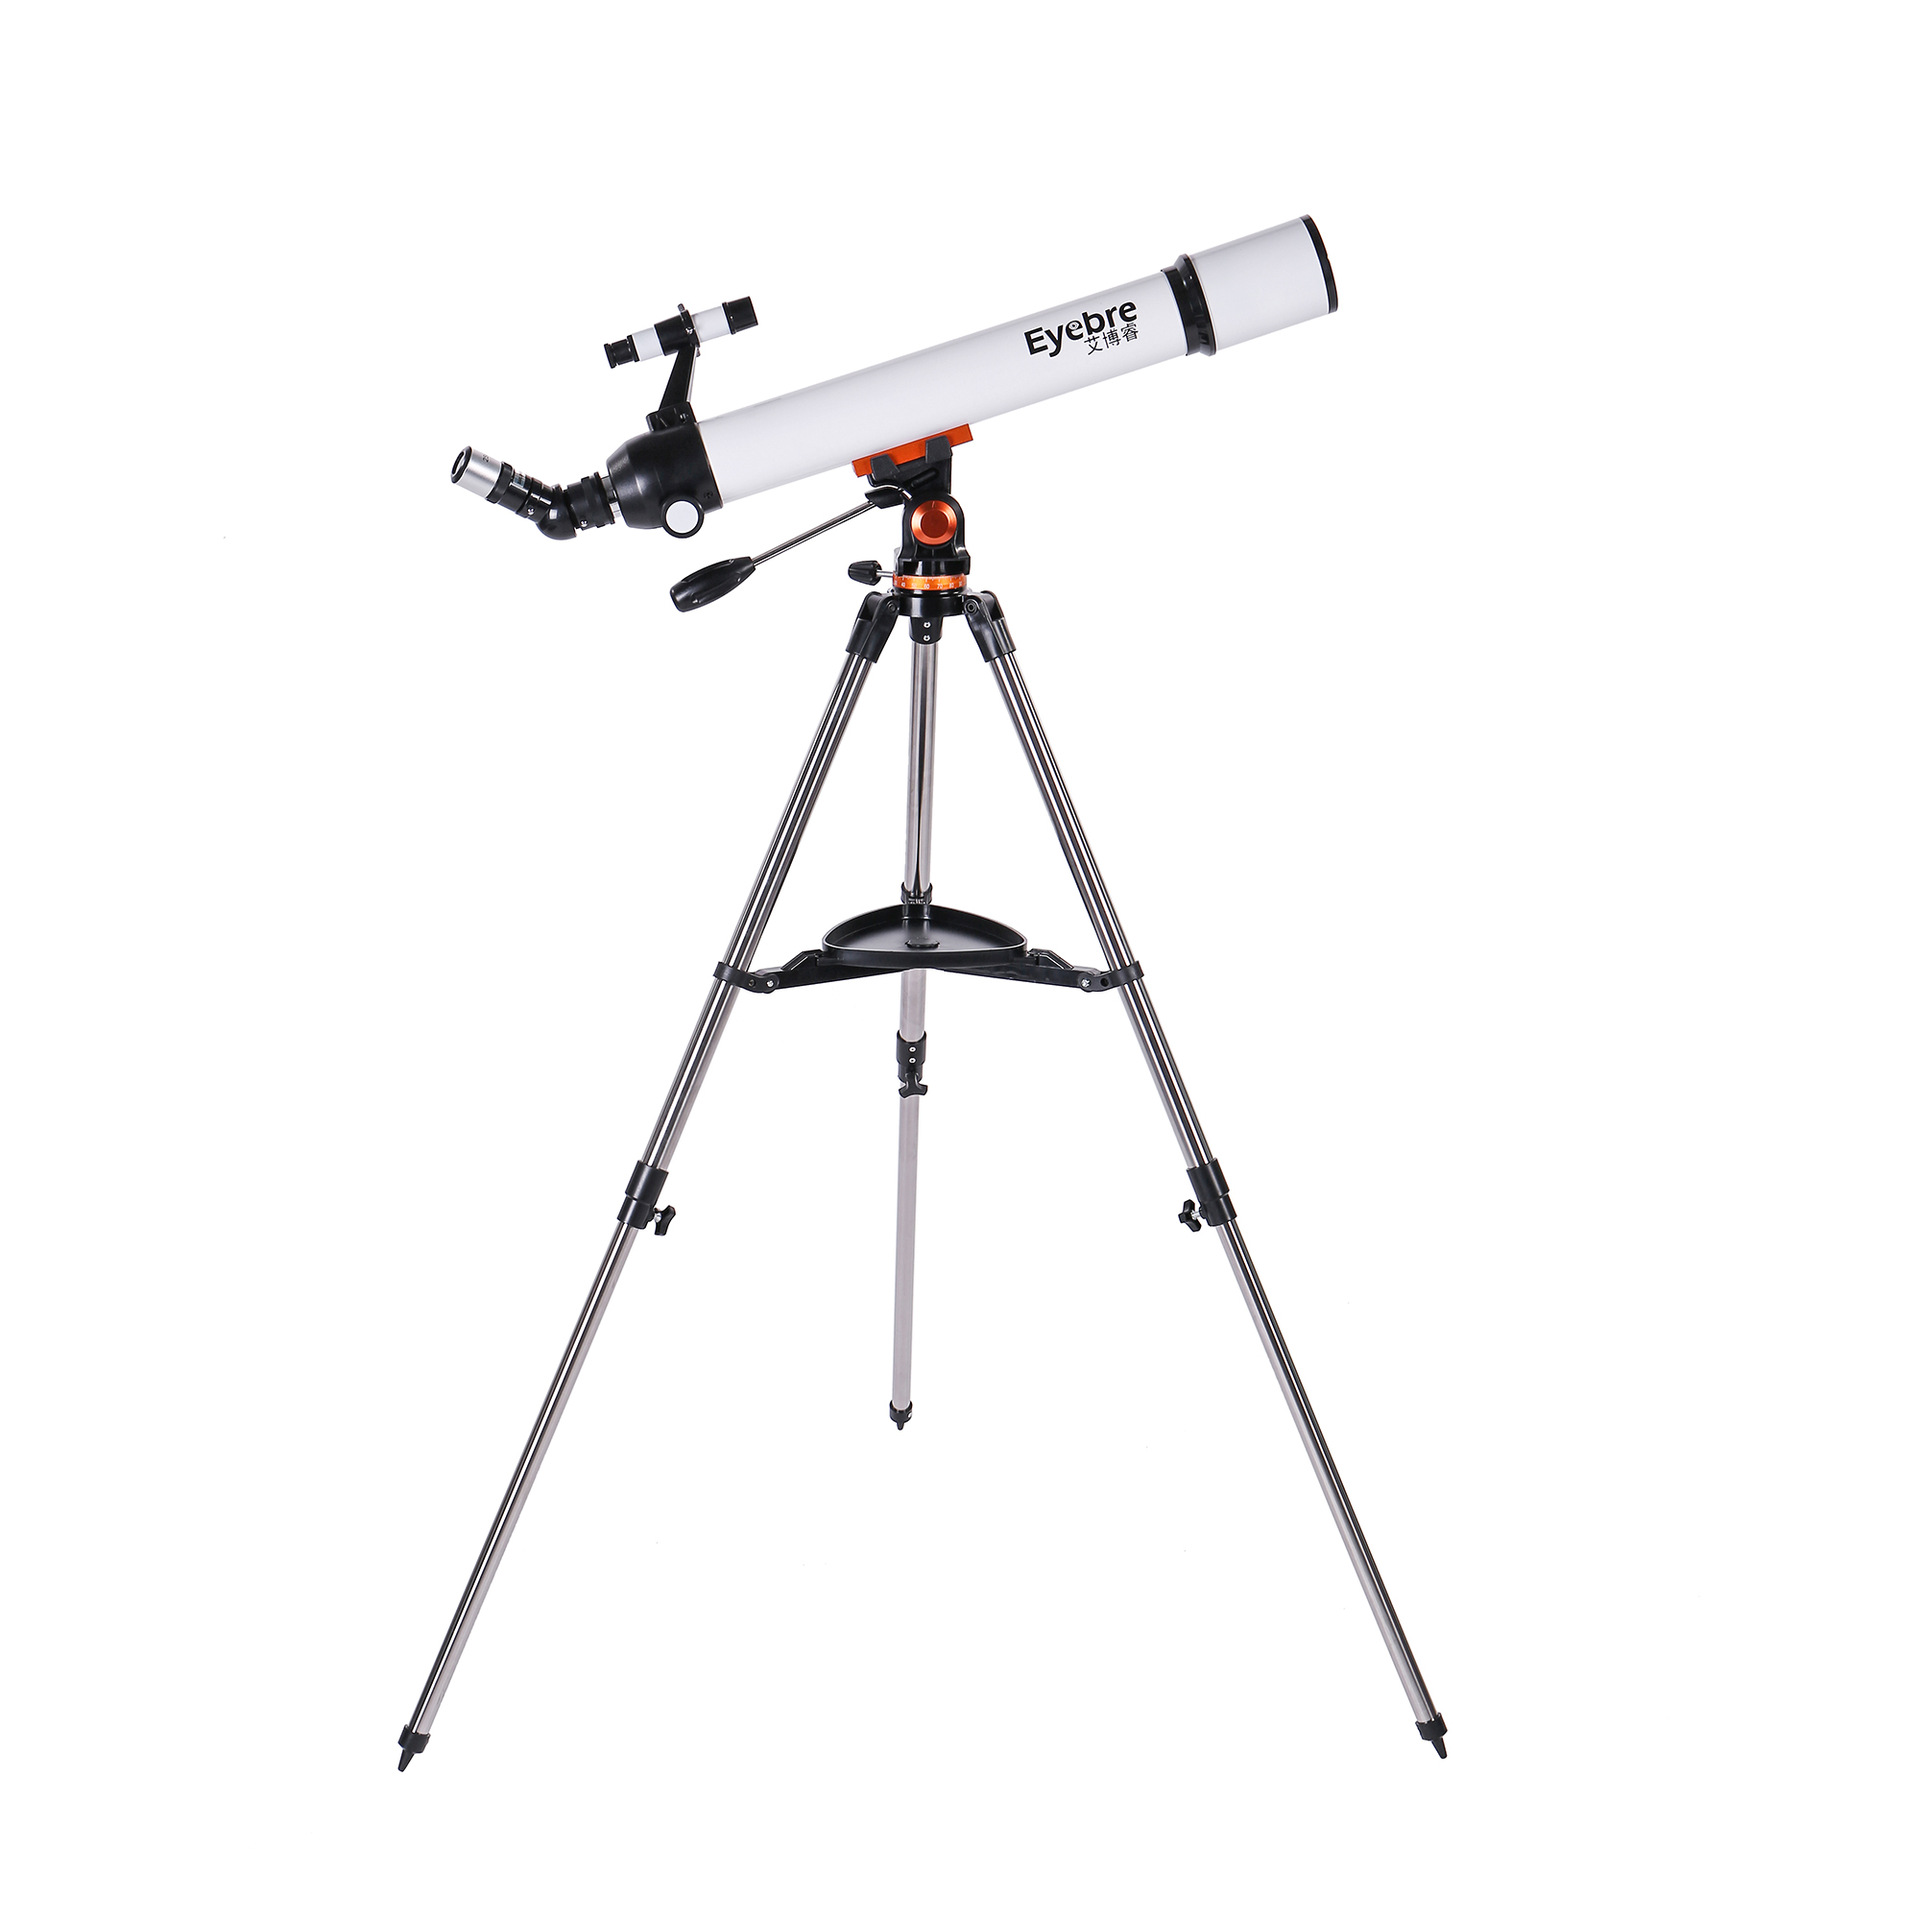 高级望远镜图片及价格图片